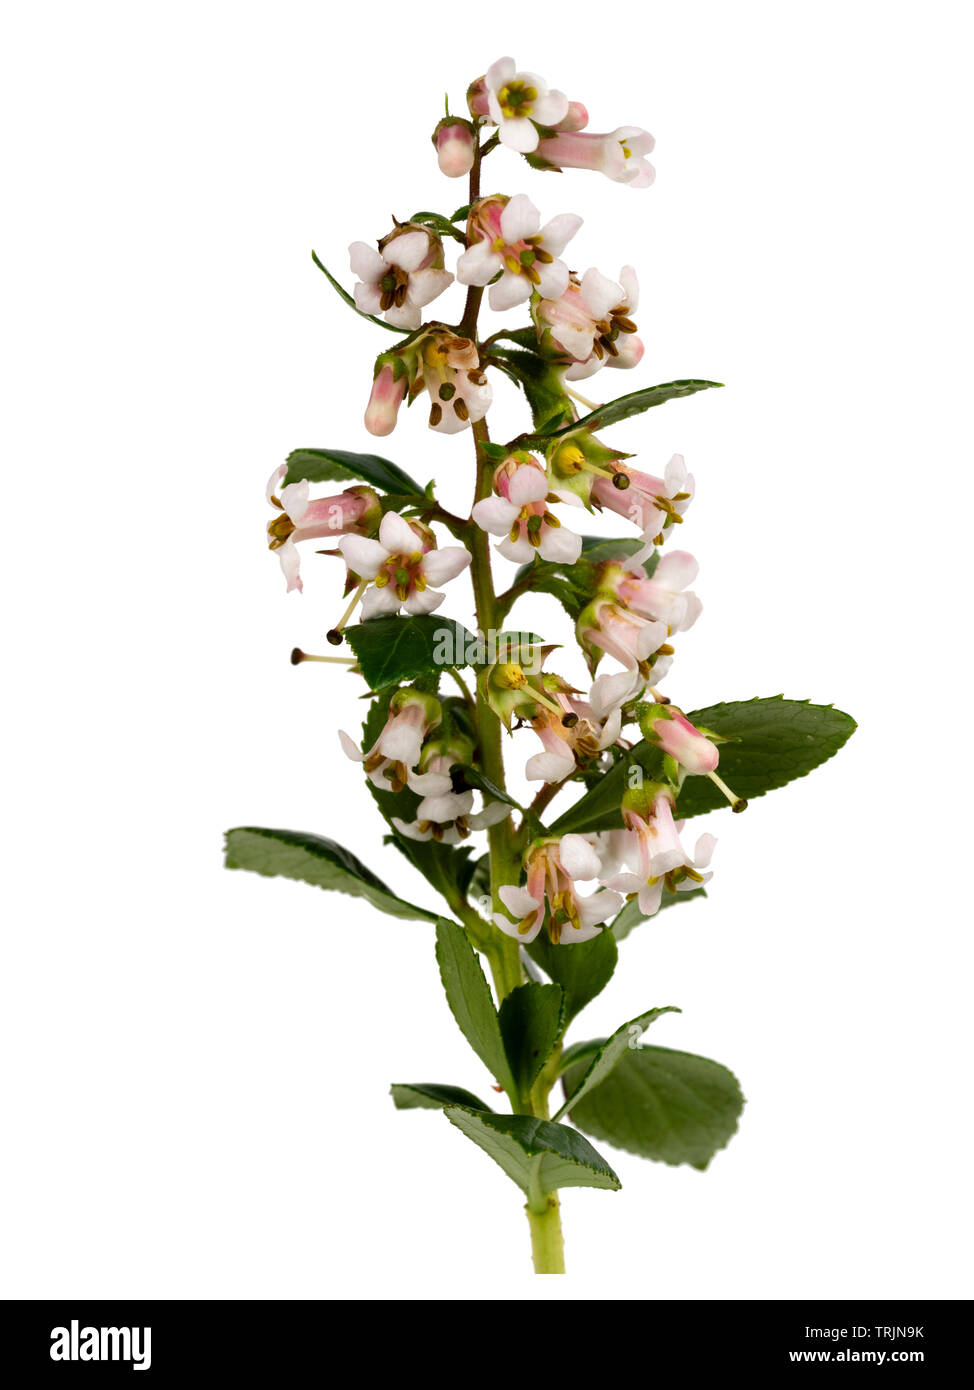 Panícula de verano el rosa pálido y blanco arbusto siempreverde florecido cobertura, Escallonia 'Apple Blossom' sobre un fondo blanco. Foto de stock